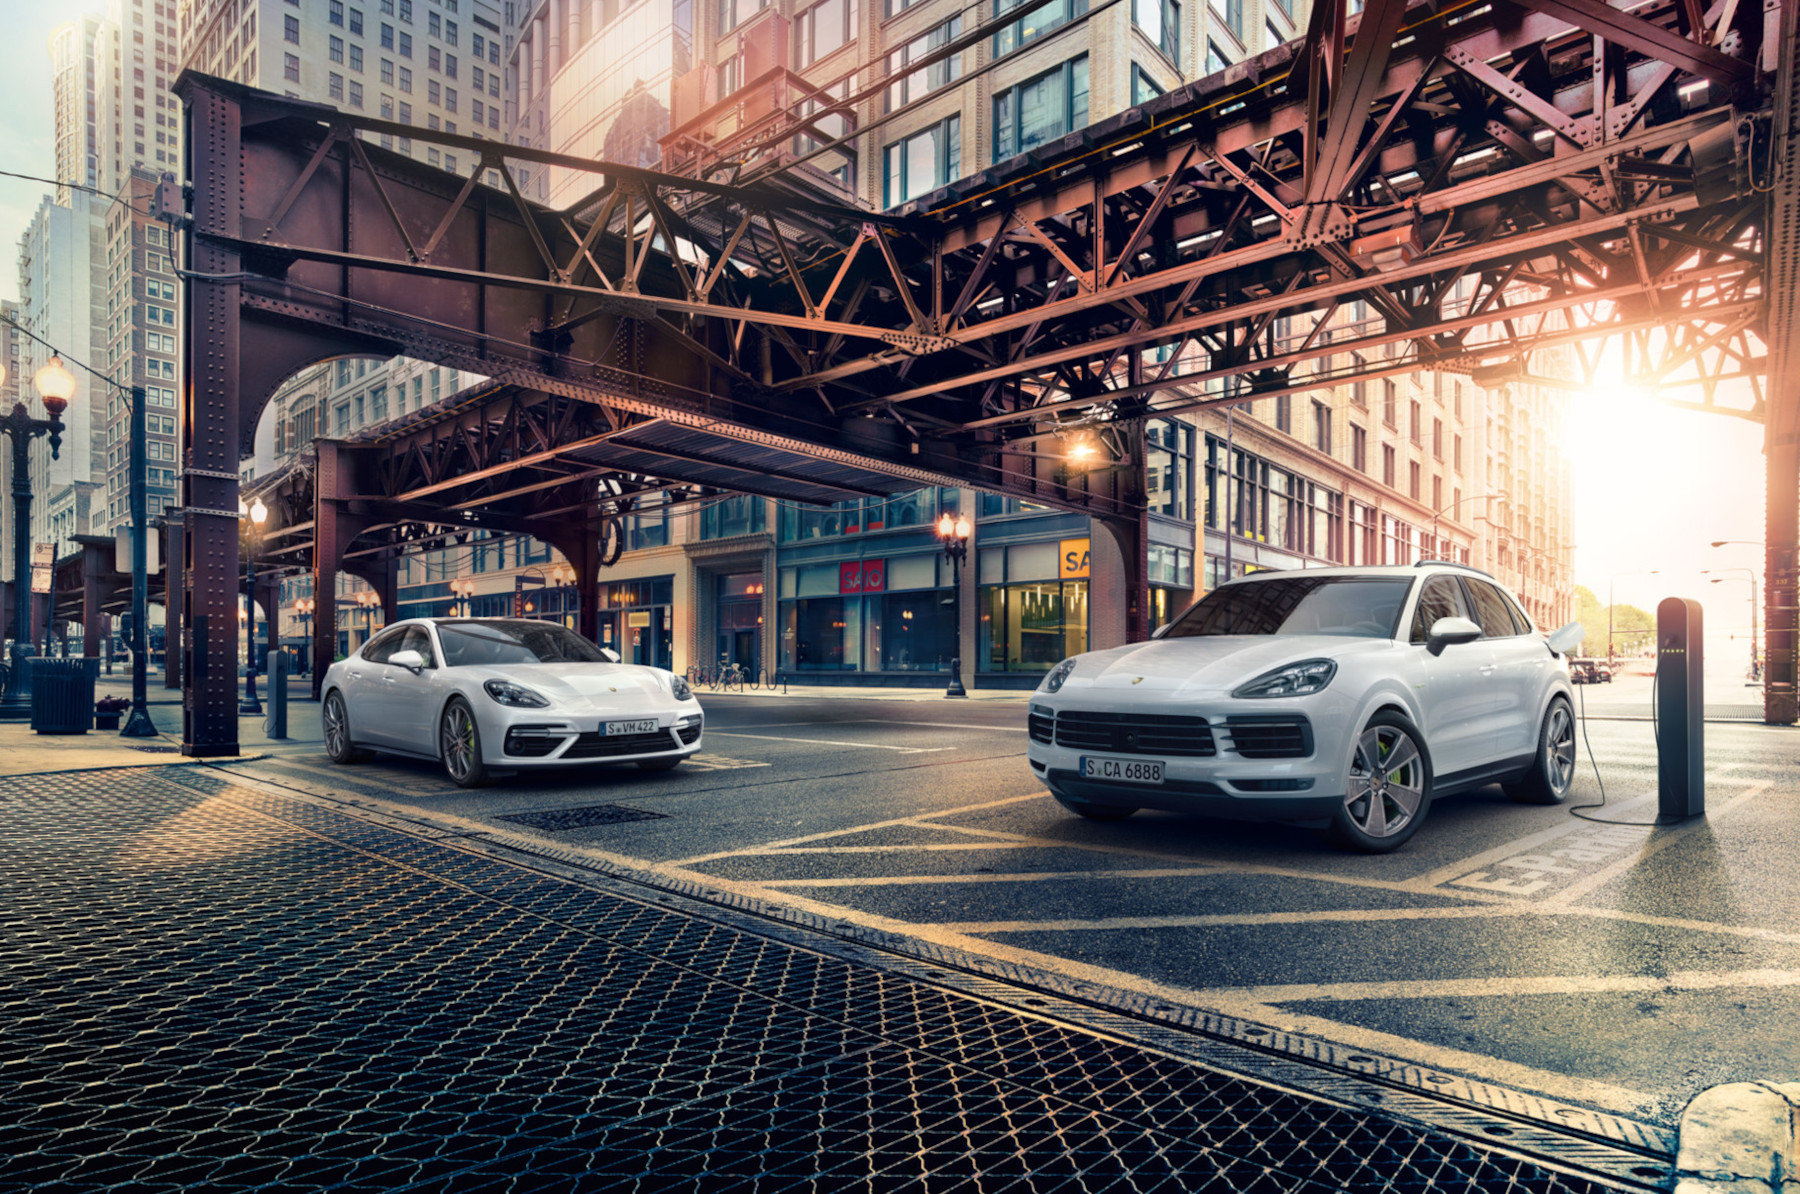 La eficiencia, innovación y desempeño tienen nombre: Porsche E-performance